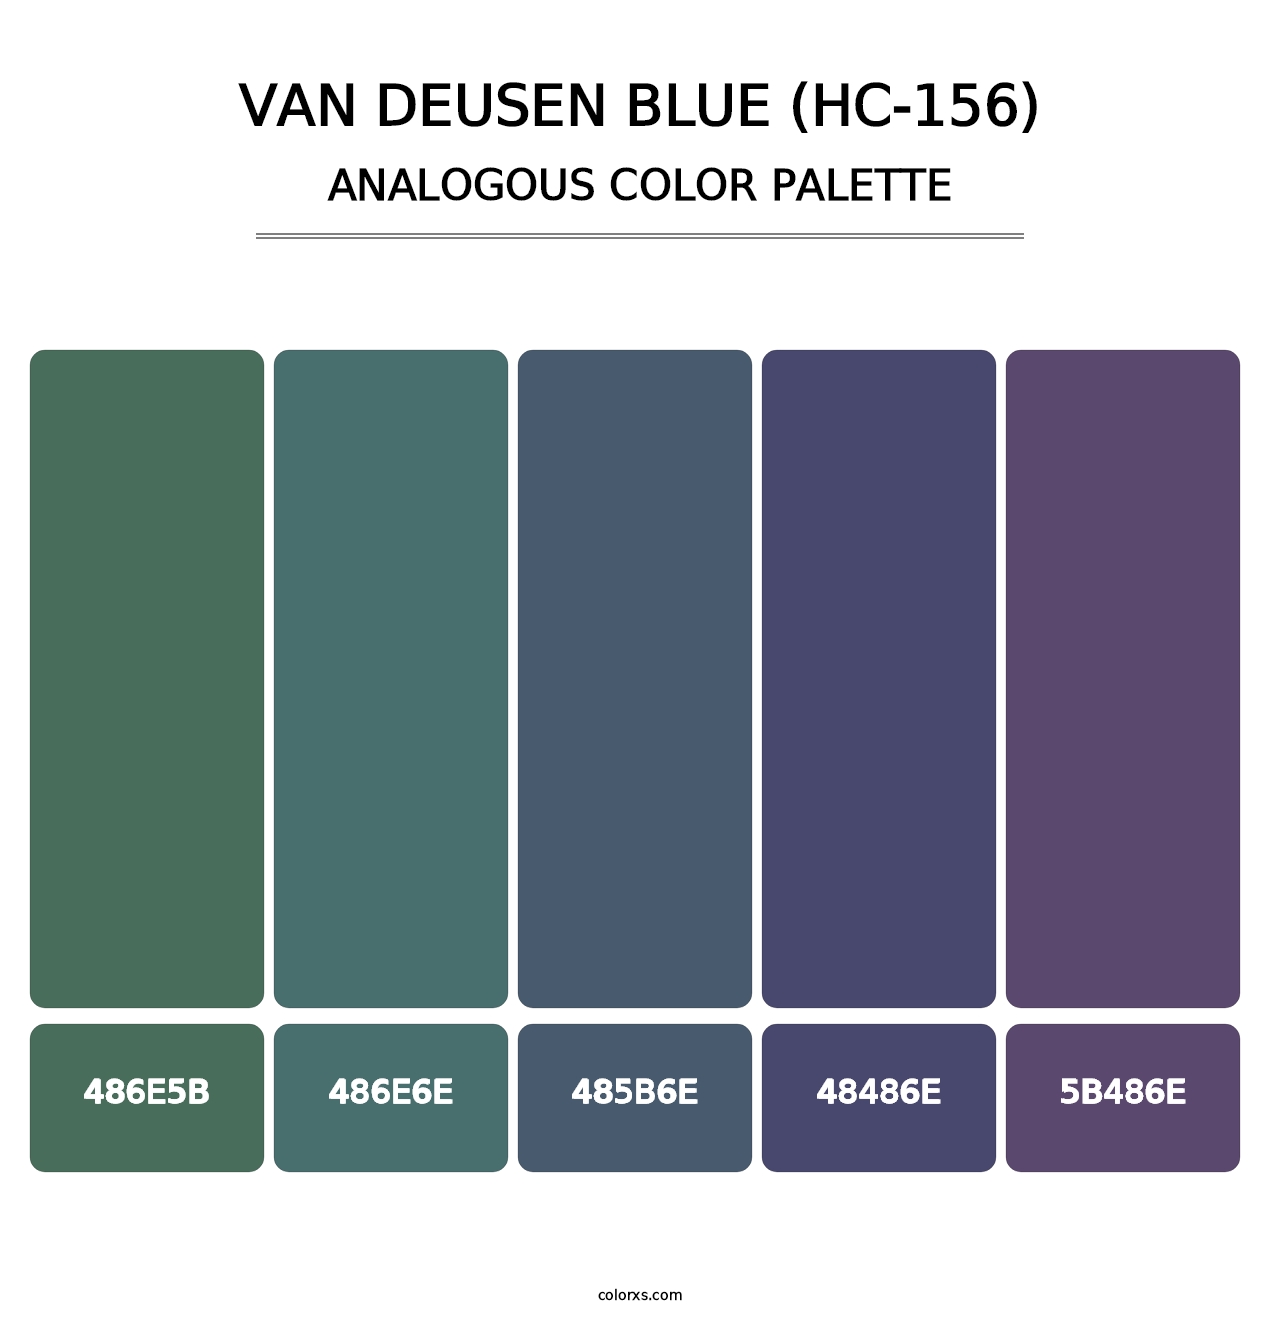 Van Deusen Blue (HC-156) - Analogous Color Palette